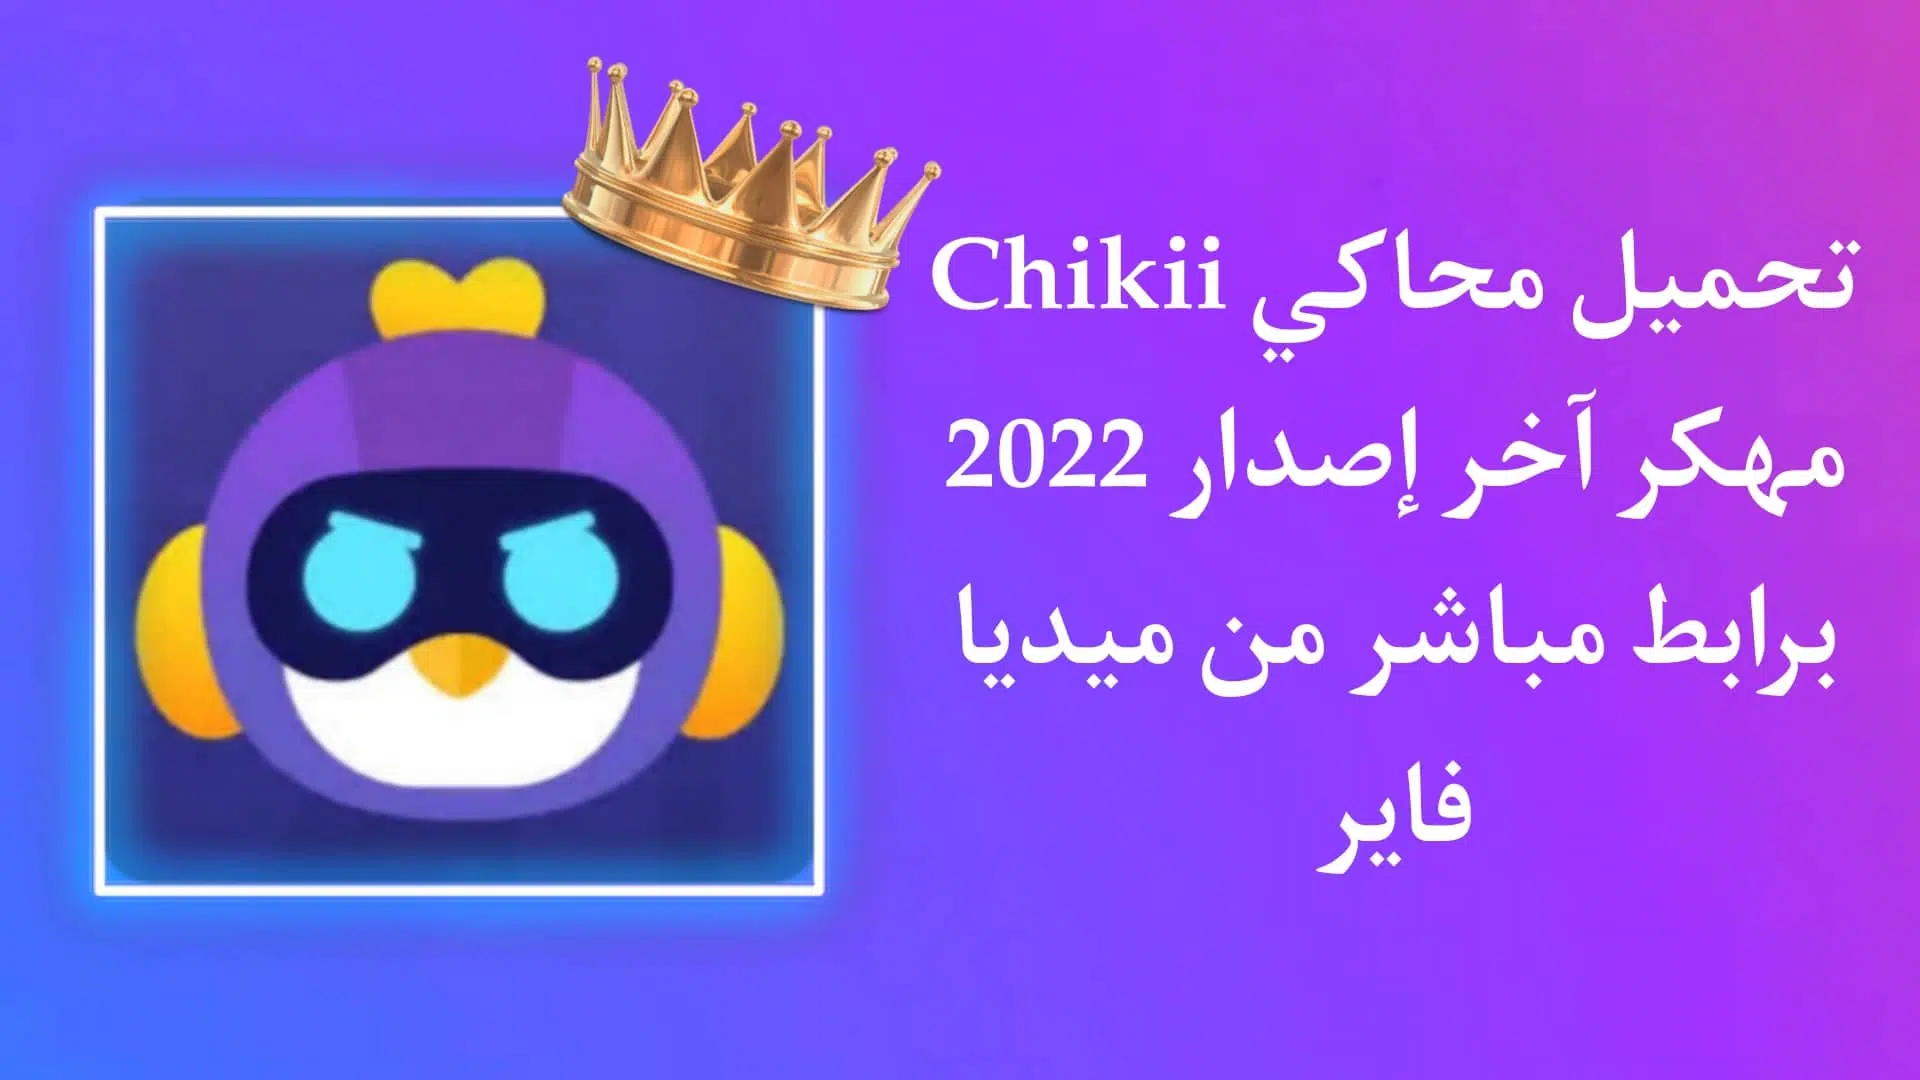 تحميل تطبيق Chikii Apk مهكر للاندرويد اخر اصدار 2022 مجانا